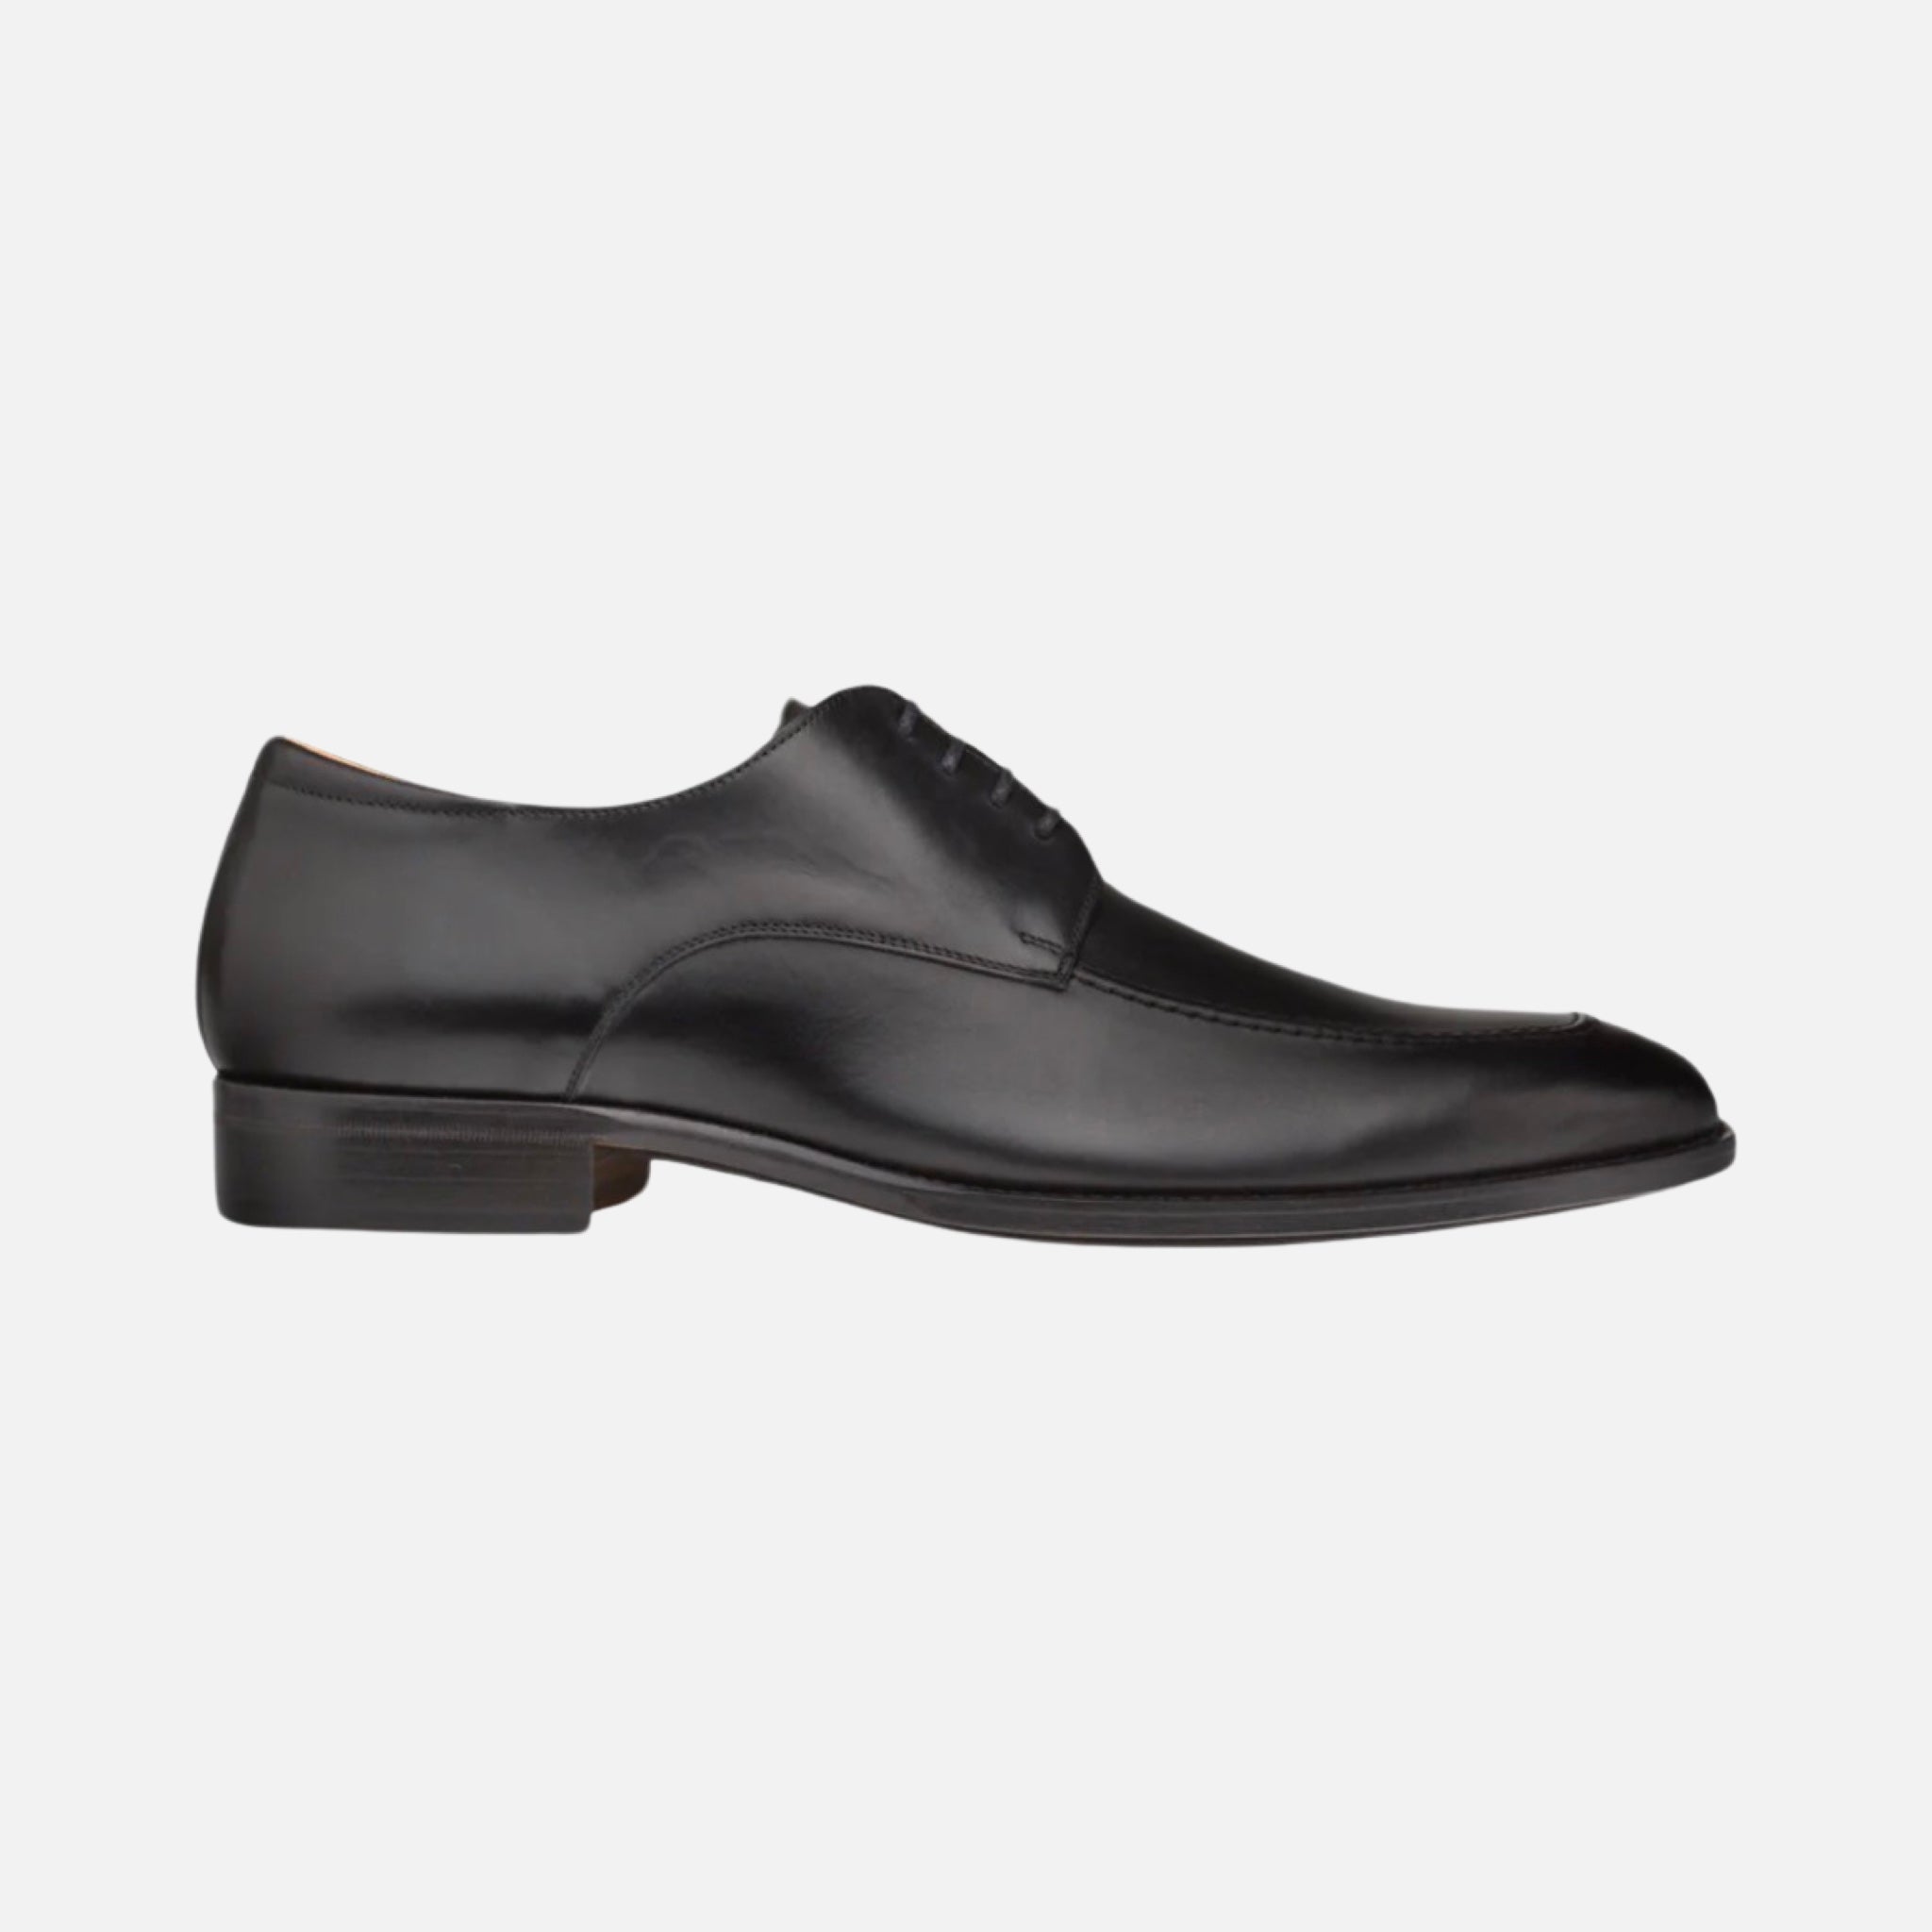 Mezlan Black Apron Toe Dress Shoe | Made in Spain